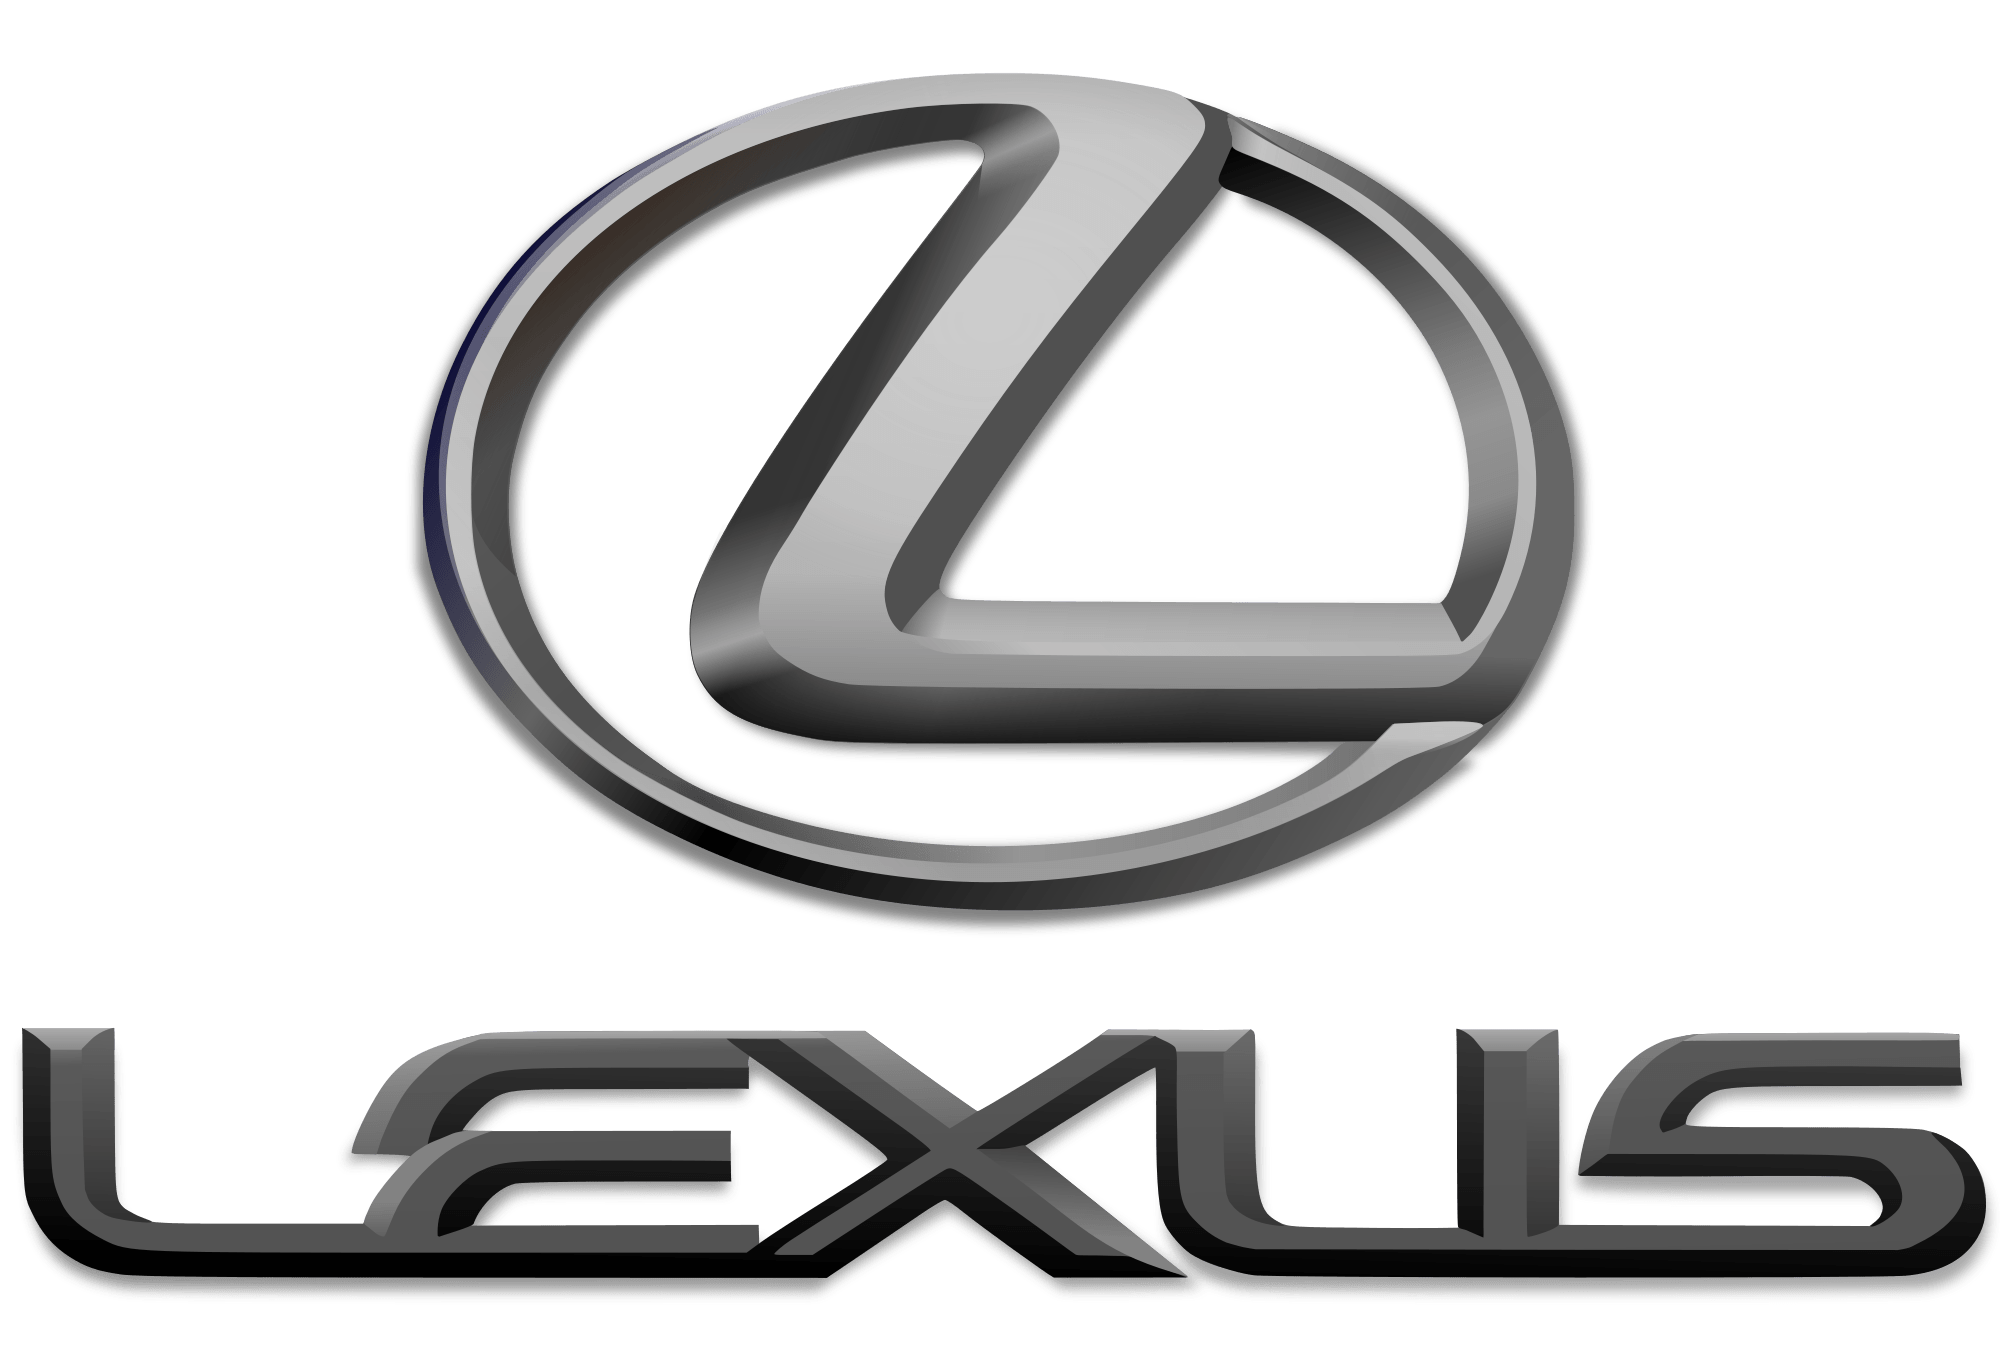 Lexus Logo Wallpapers, Pictures, Wallpaper